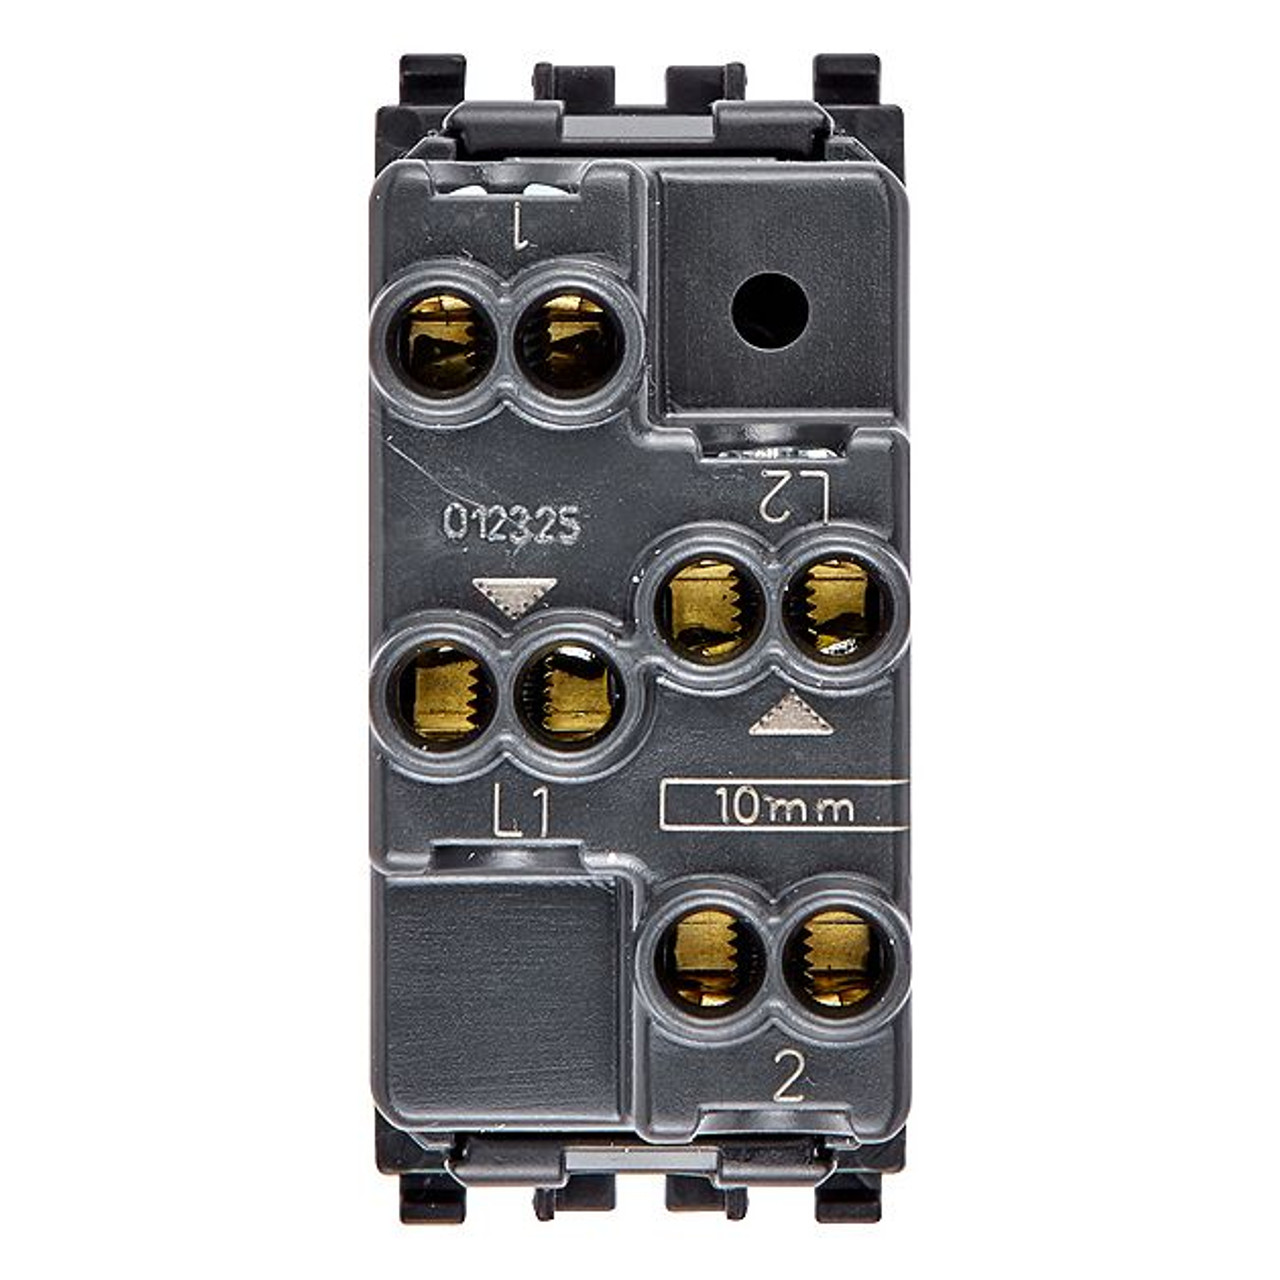 Vimar - Eikon 20062 Push Button - NO+NO, 10A, 250V, Directional Arrows - Apollo Lighting